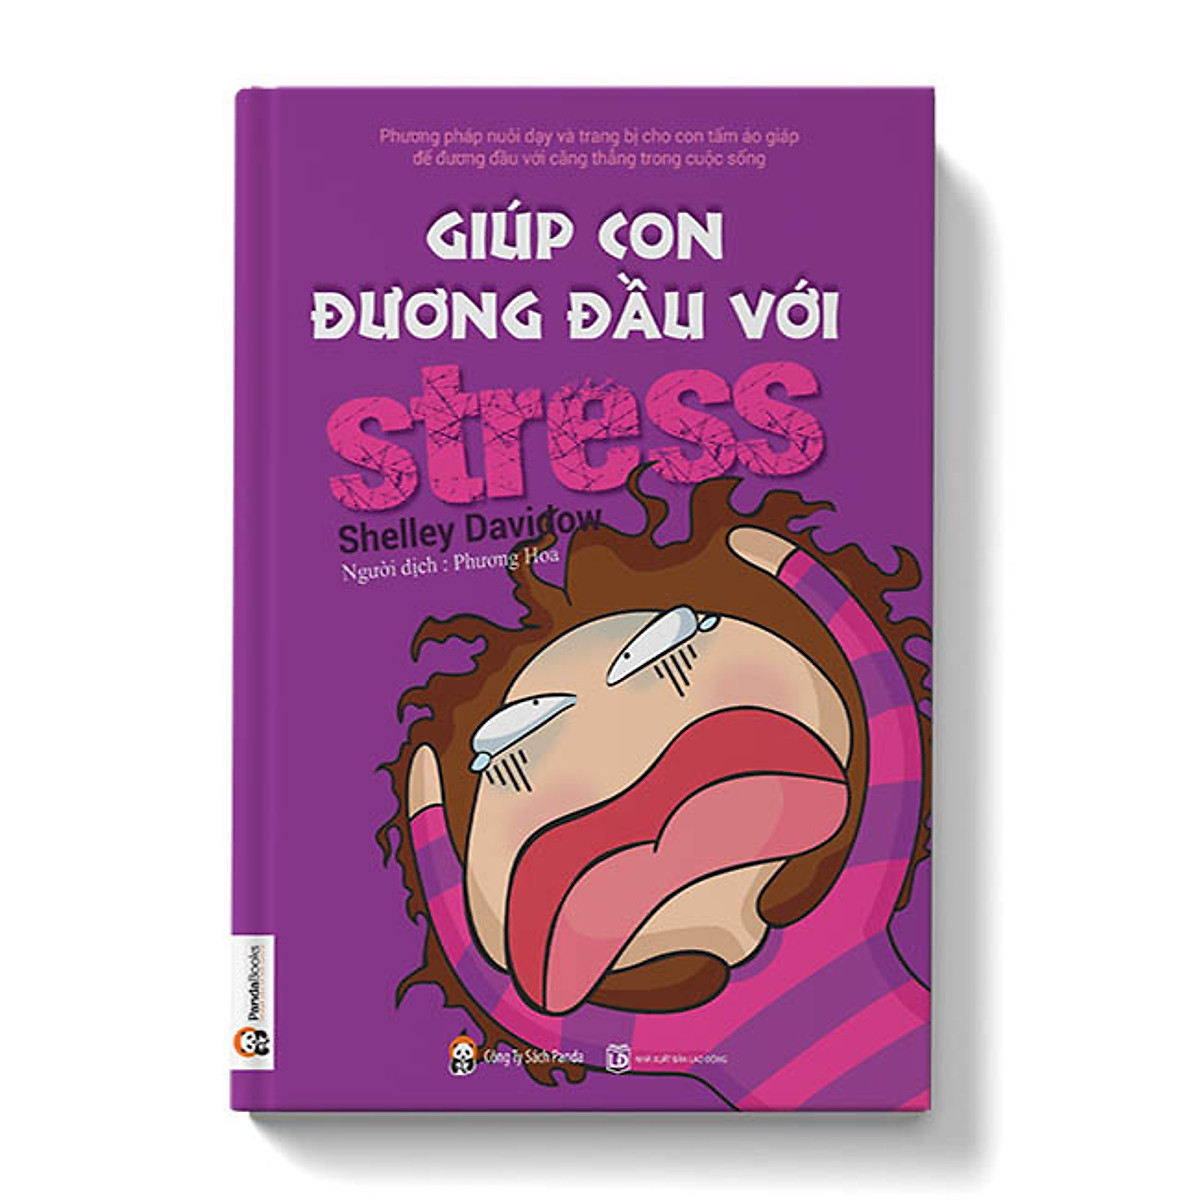 Bộ sách 5 cuốn: 50 việc bố mẹ nên làm vì con, Giúp con đương đầu với Stress, Hãy nói với con rằn con giỏi lắm, Bách khoa chăm sóc trẻ toàn diện, Làm thế nào để con chăm học